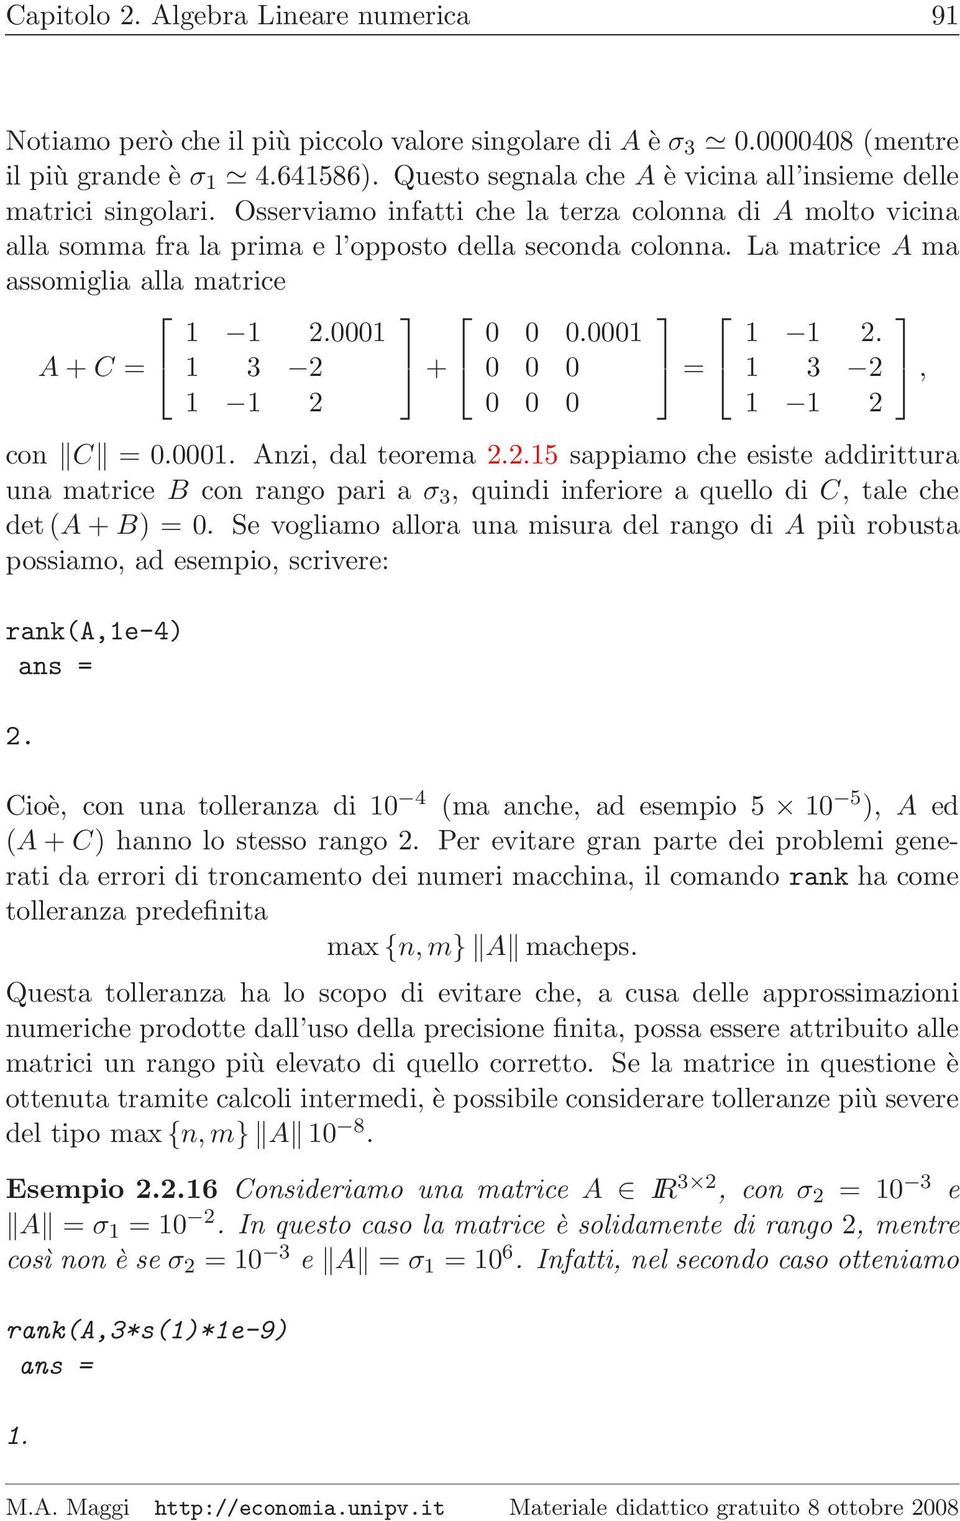 La matrice A ma assomiglia alla matrice A + C = 1 1 2.0001 1 3 2 1 1 2 + 0 0 0.0001 0 0 0 0 0 0 = 1 1 2. 1 3 2 1 1 2 con C = 0.0001. Anzi, dal teorema 2.2.15 sappiamo che esiste addirittura una matrice B con rango pari a σ 3, quindi inferiore a quello di C, tale che det(a + B) = 0.